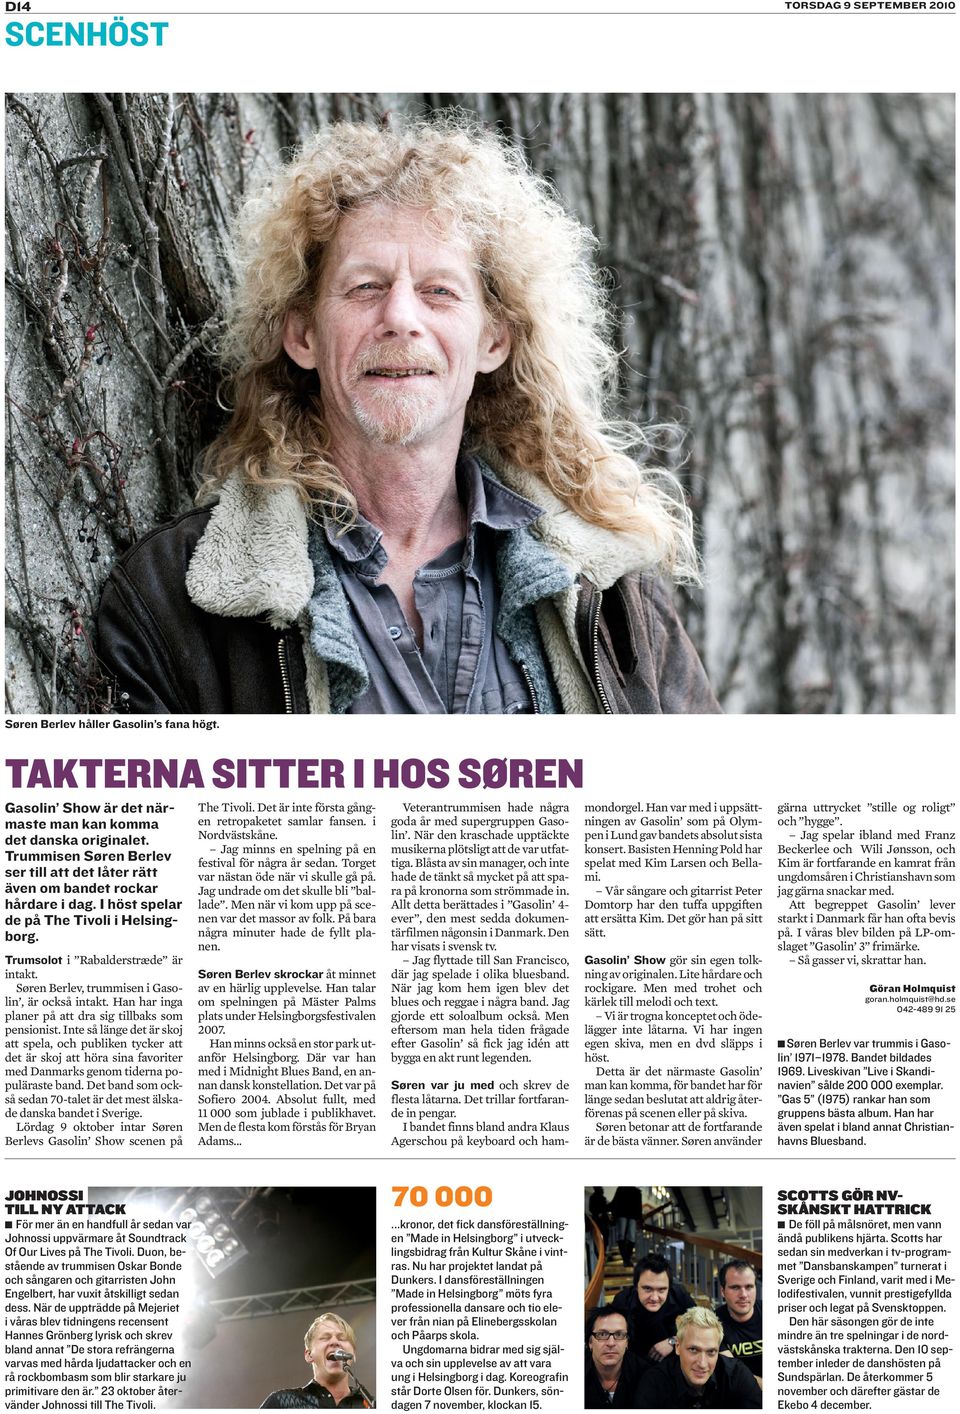 Søren Berlev, trummisen i Gasolin, är också intakt. Han har inga planer på att dra sig tillbaks som pensionist.